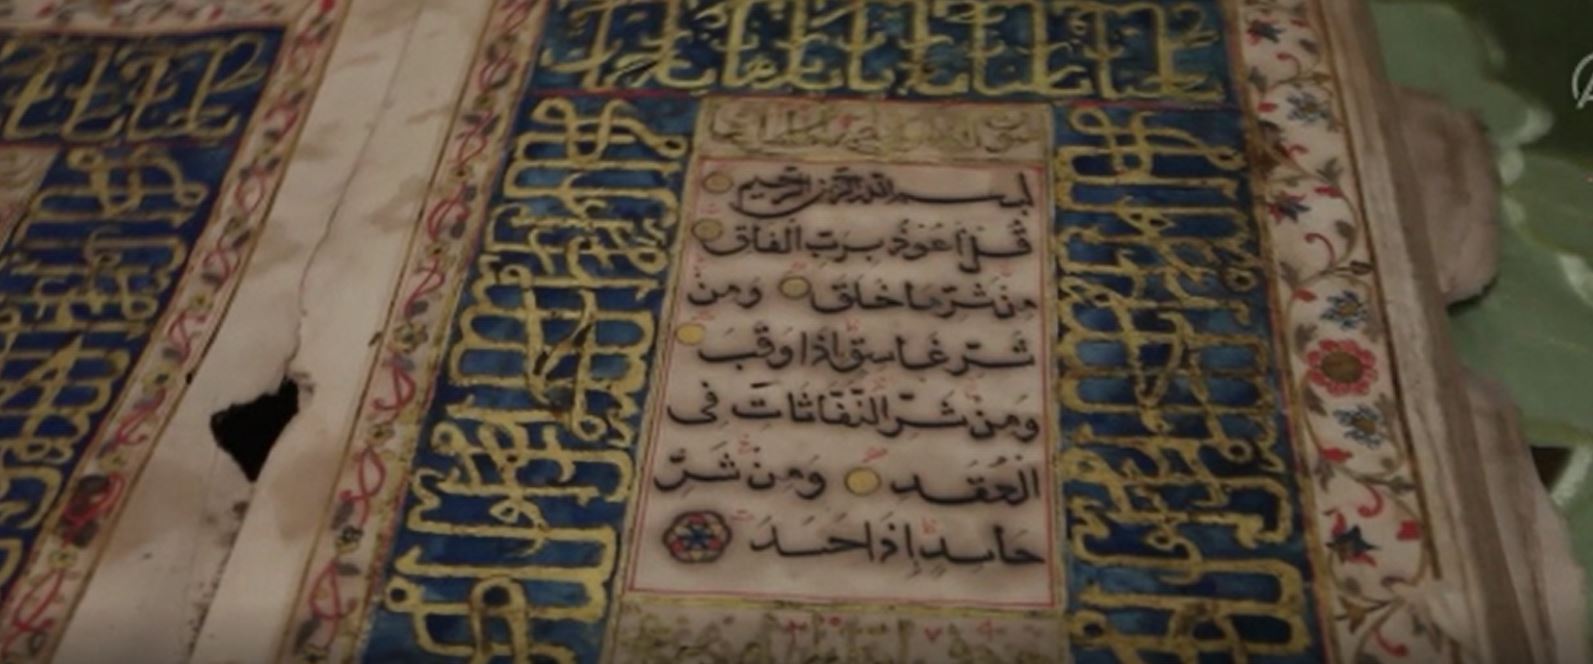 300 yıllık Kuran'ı Kerim görüntülendi  